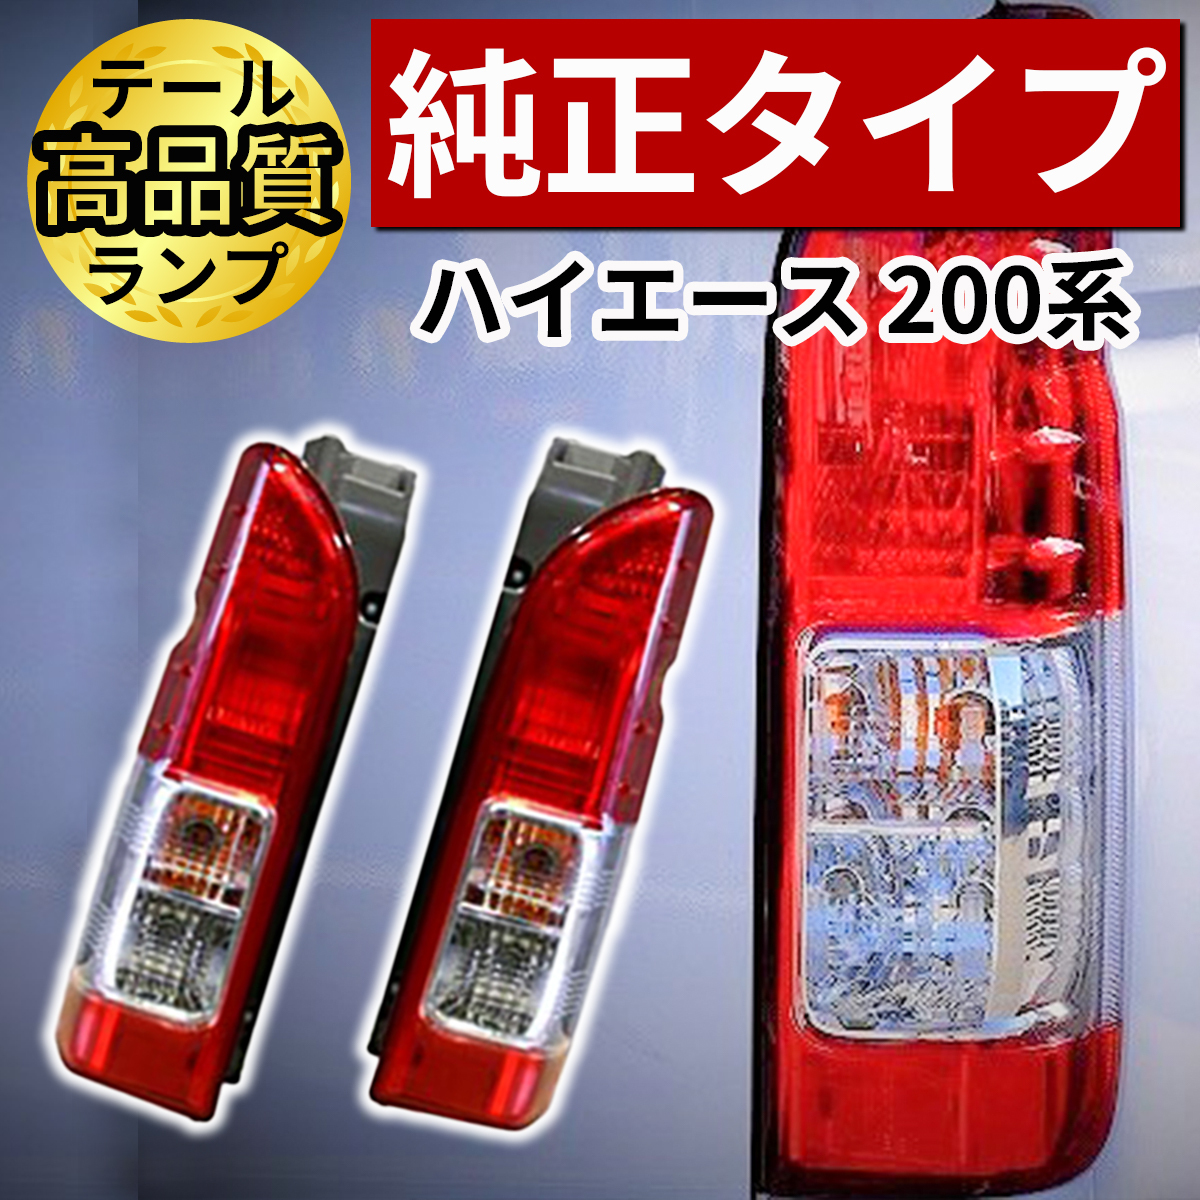 【楽天市場】ハイエース 200系 テールランプ 純正 タイプ レジアス 